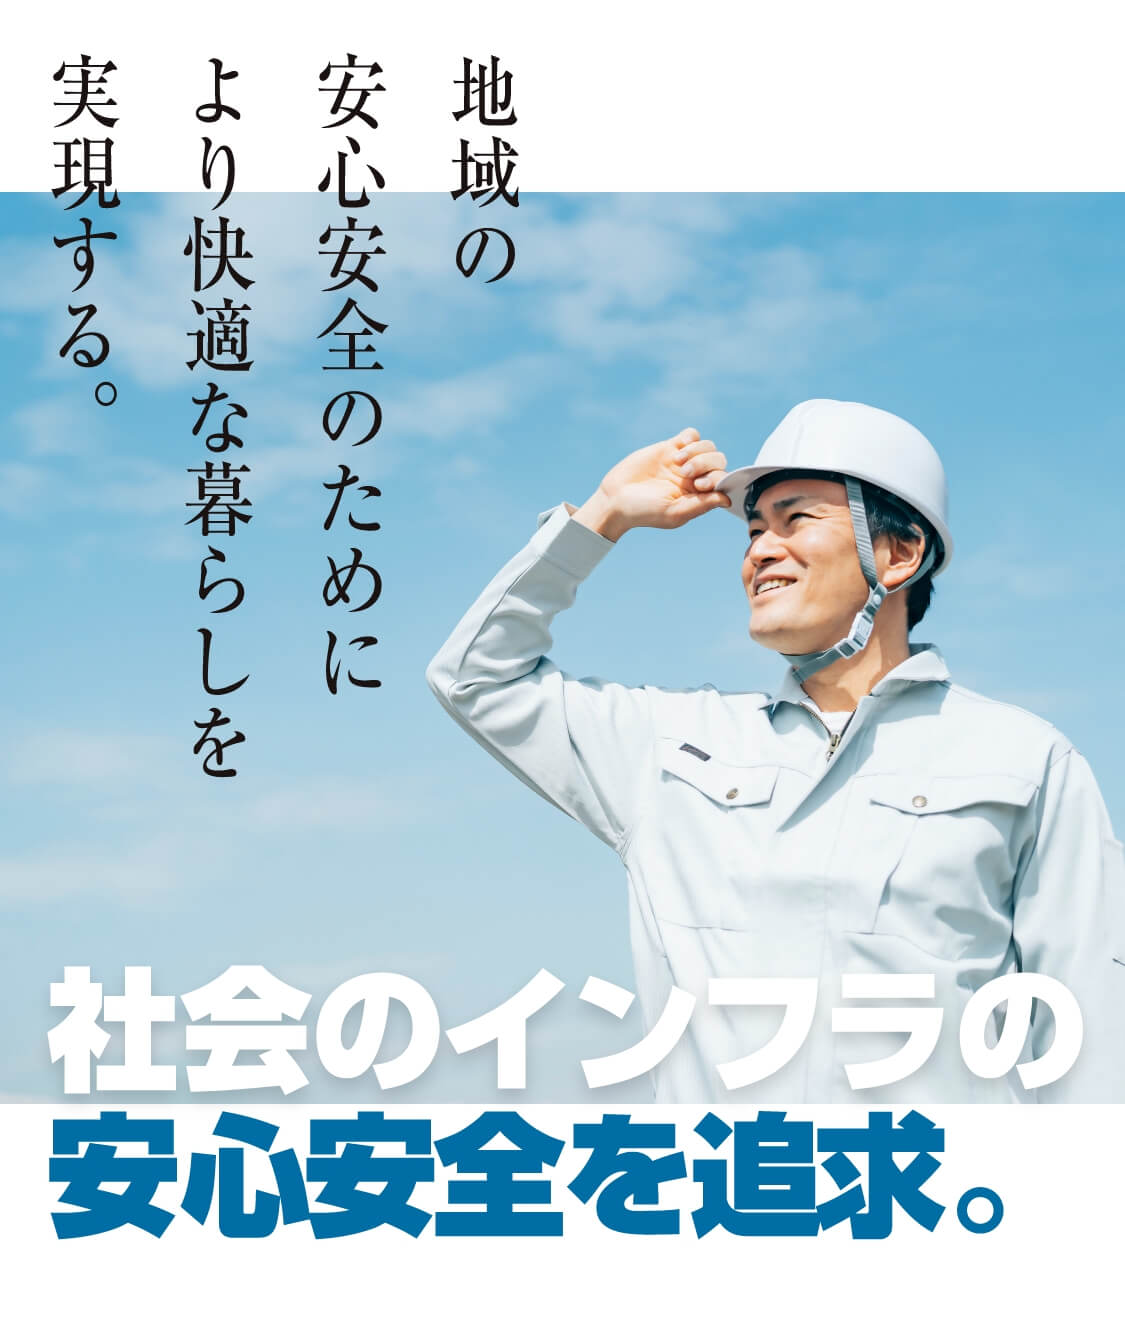 兵庫県・姫路市水道局指定店。地域の安心安全のためにより快適な暮らしを実現する。社会のインフラの安心安全を追求。